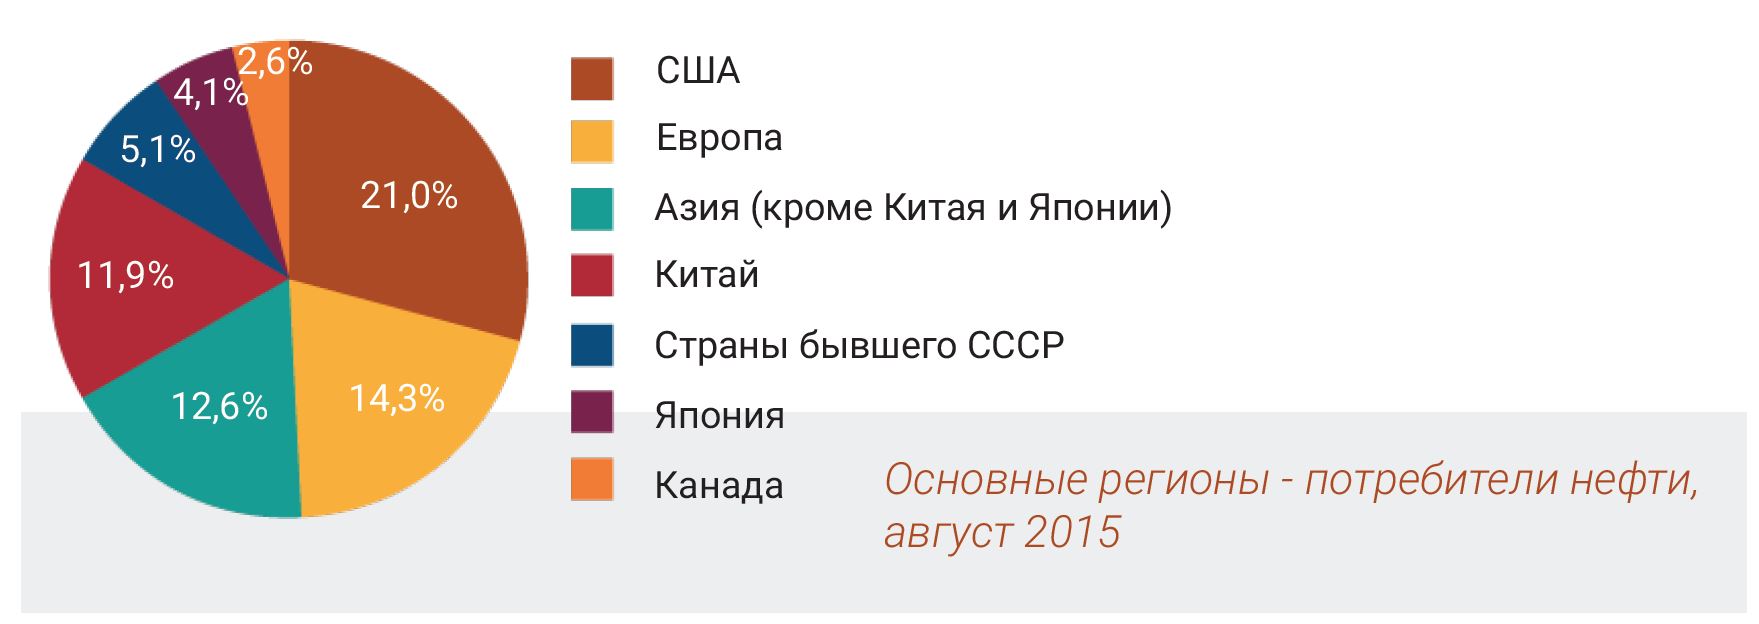 Основные регионы - потребители нефти, август 2015